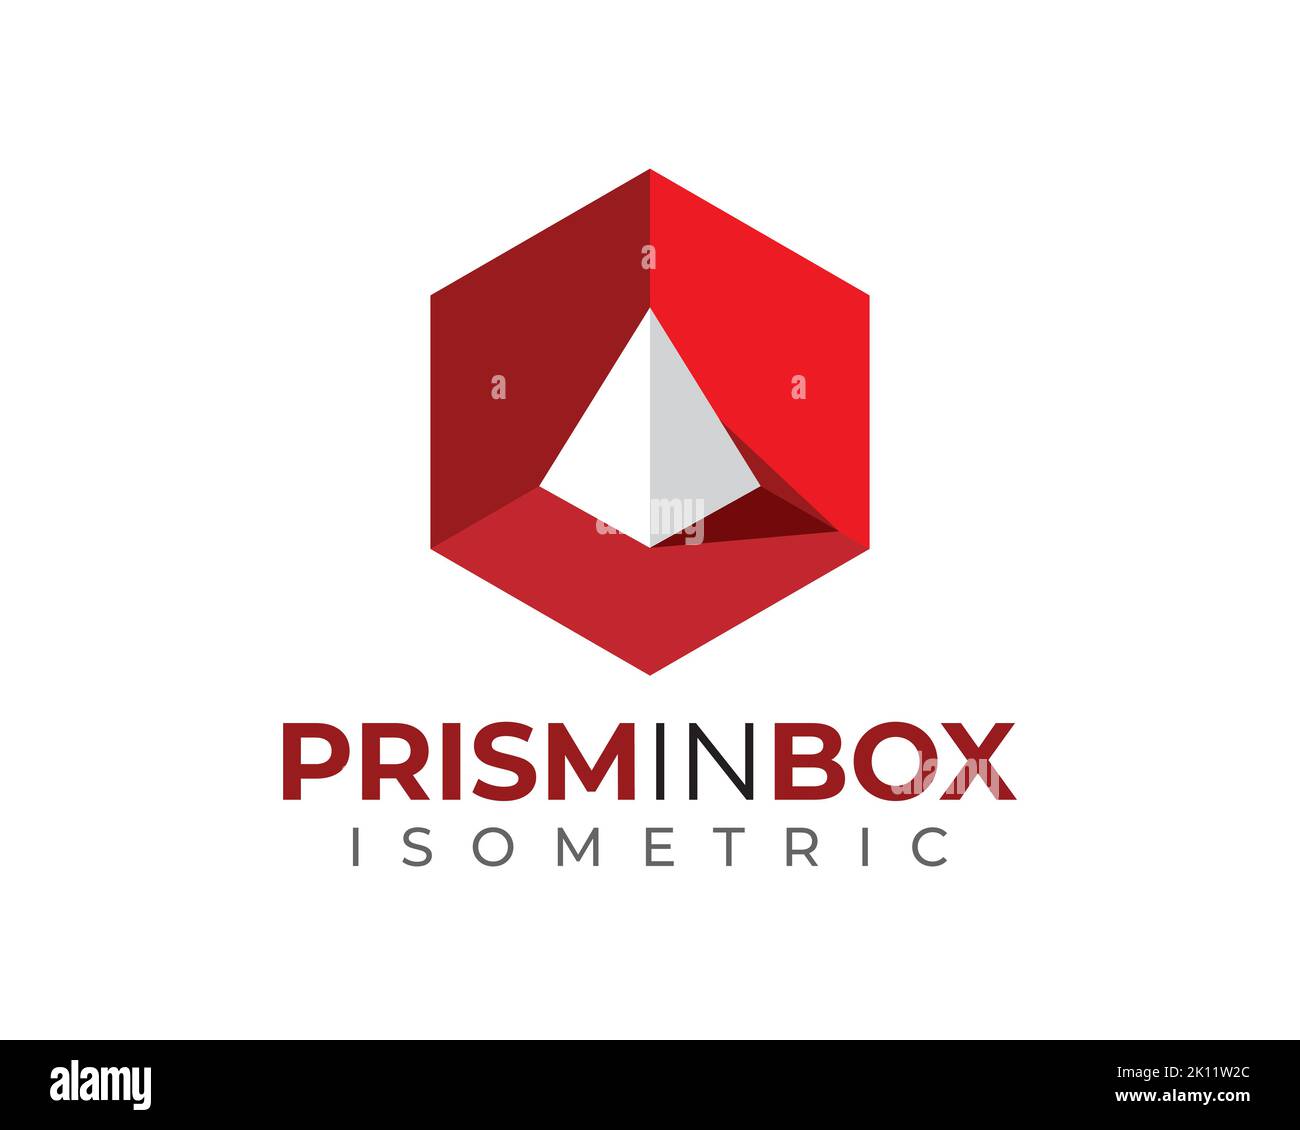 Weiße 3D 3-dimensionale isomentric Prismenpyramide im roten Sechseck-Kasten mit Licht und Schatten Stock Vektor